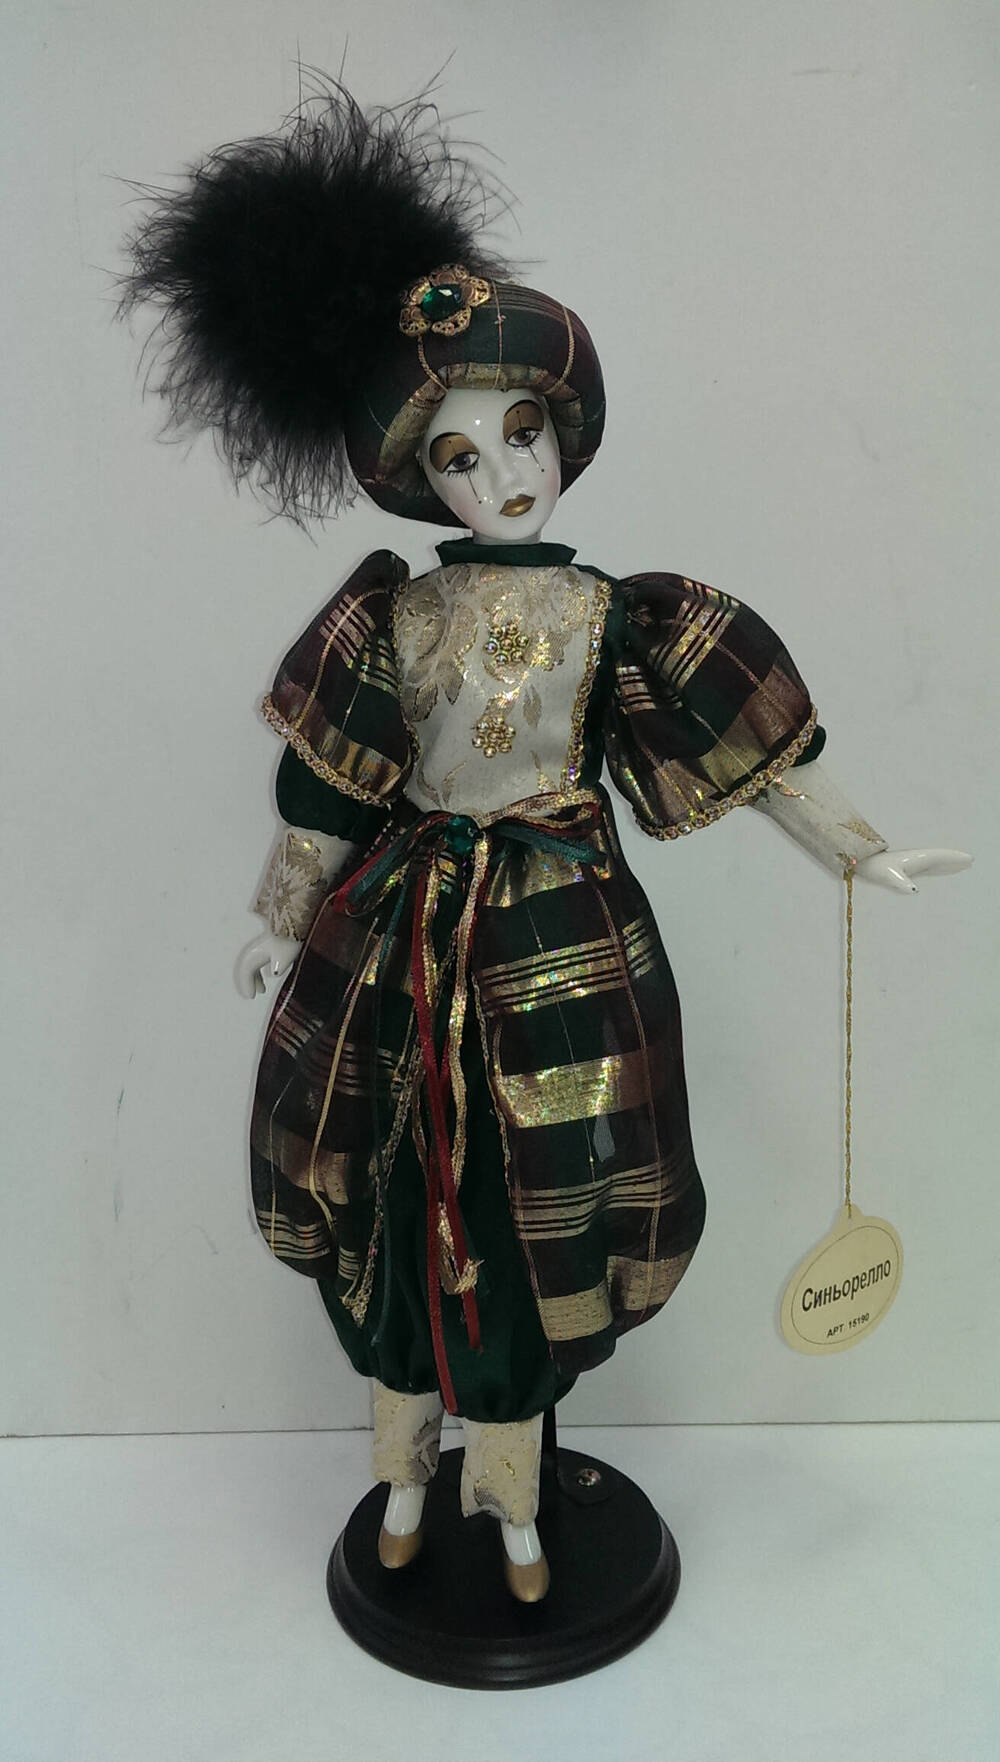 Синьорелло. Кукла из Коллекции кукол ручной работы с фарфоровыми элементами «Арлекин» компании «Ремеко», Великобритания (Remeco HARLEQUIN Collection).